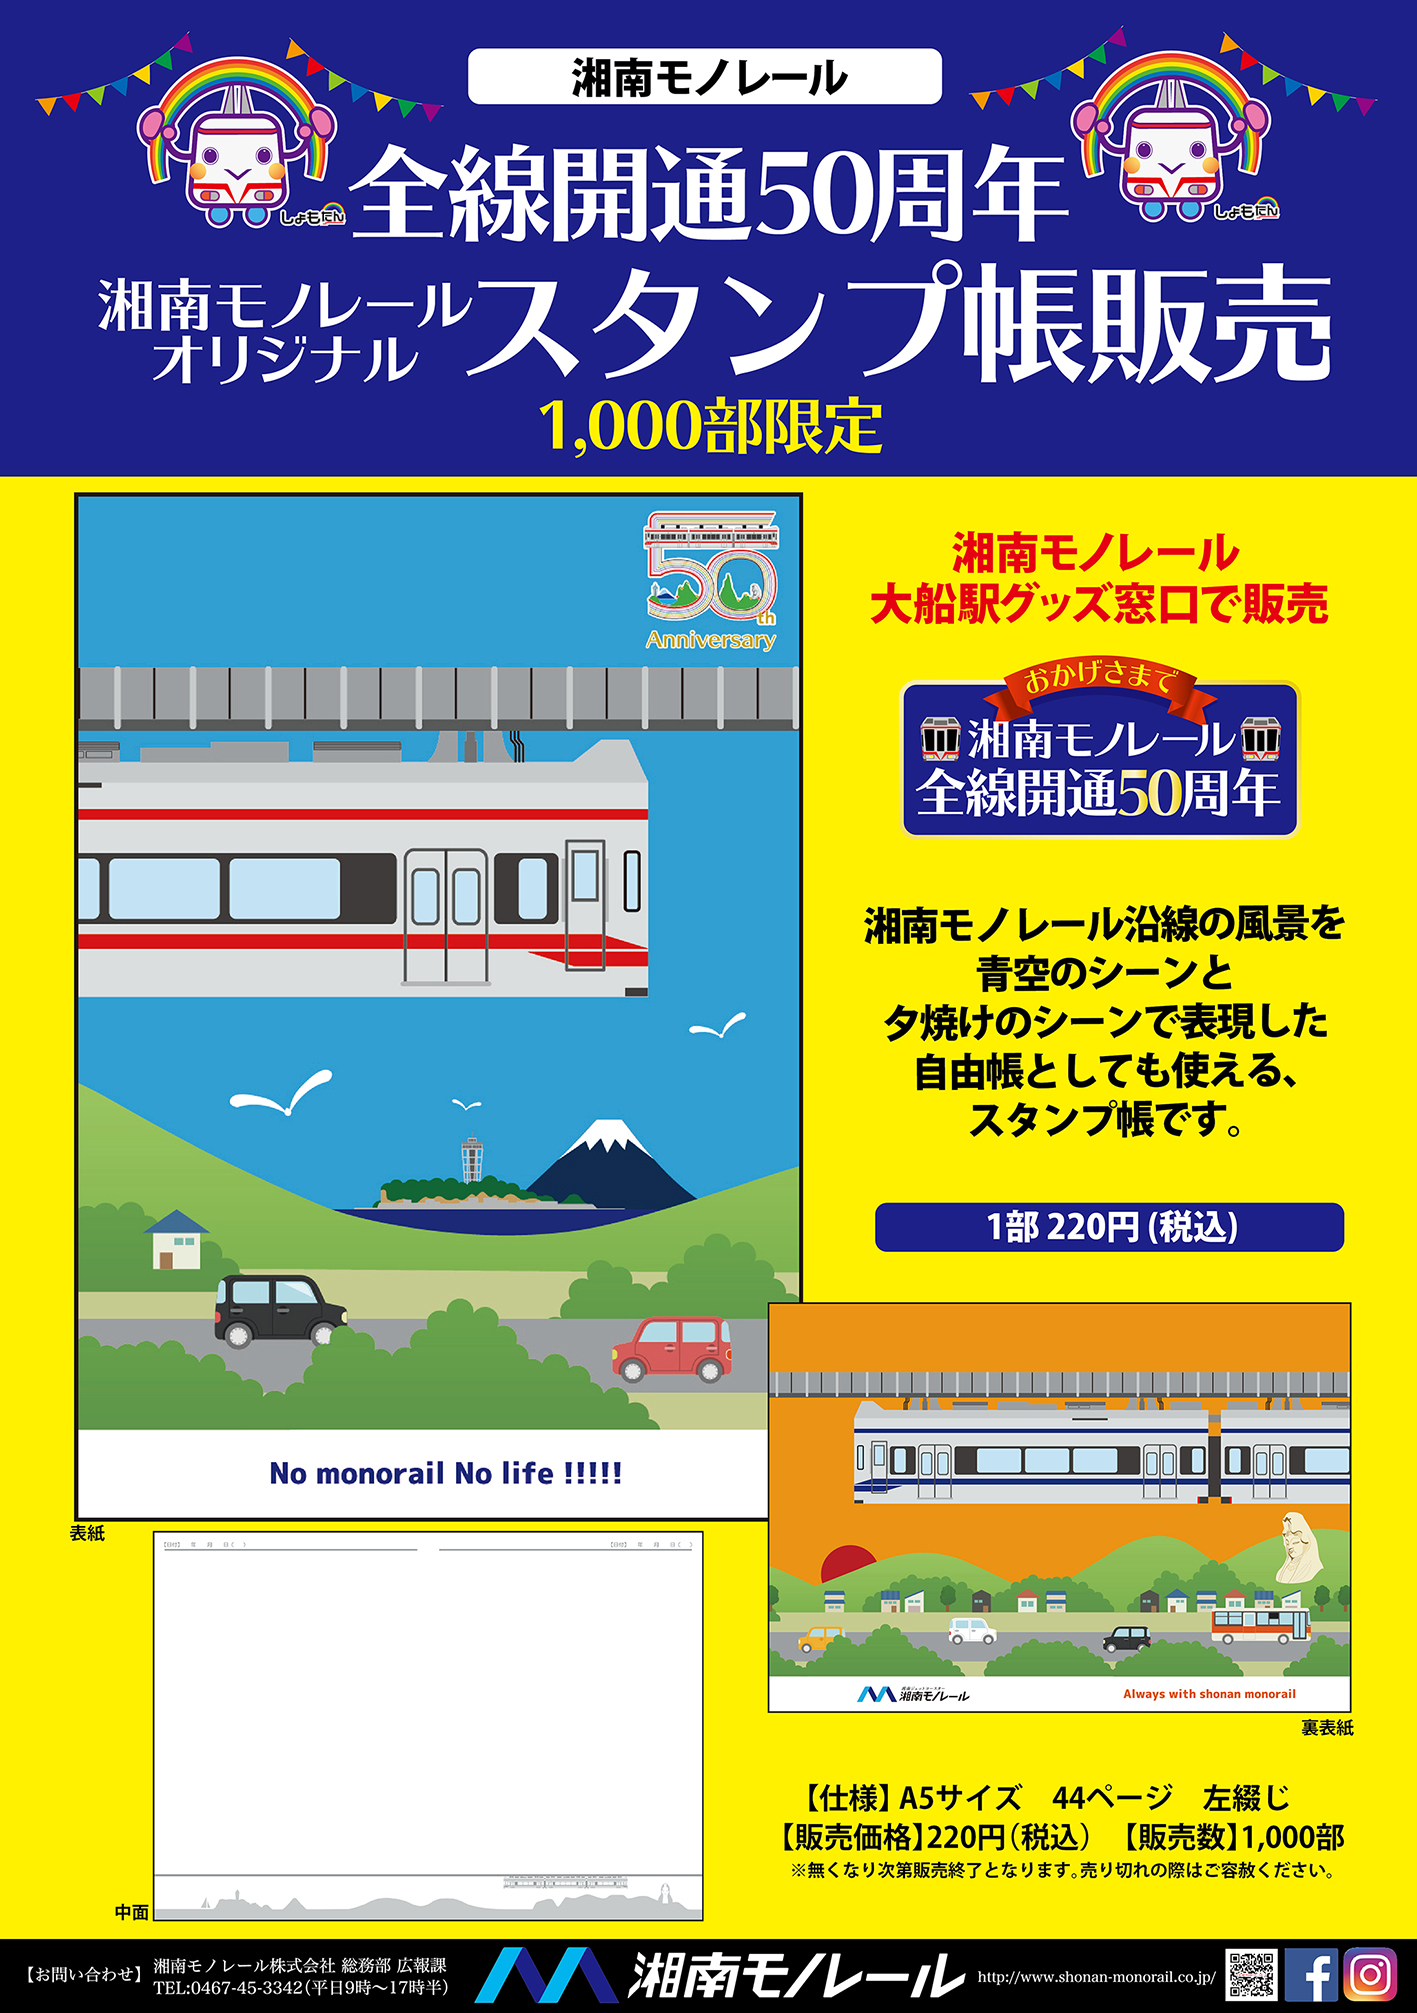 https://www.shonan-monorail.co.jp/news/upload/c1d6b0b293bc6caf90345dac903a729e51395318.jpg